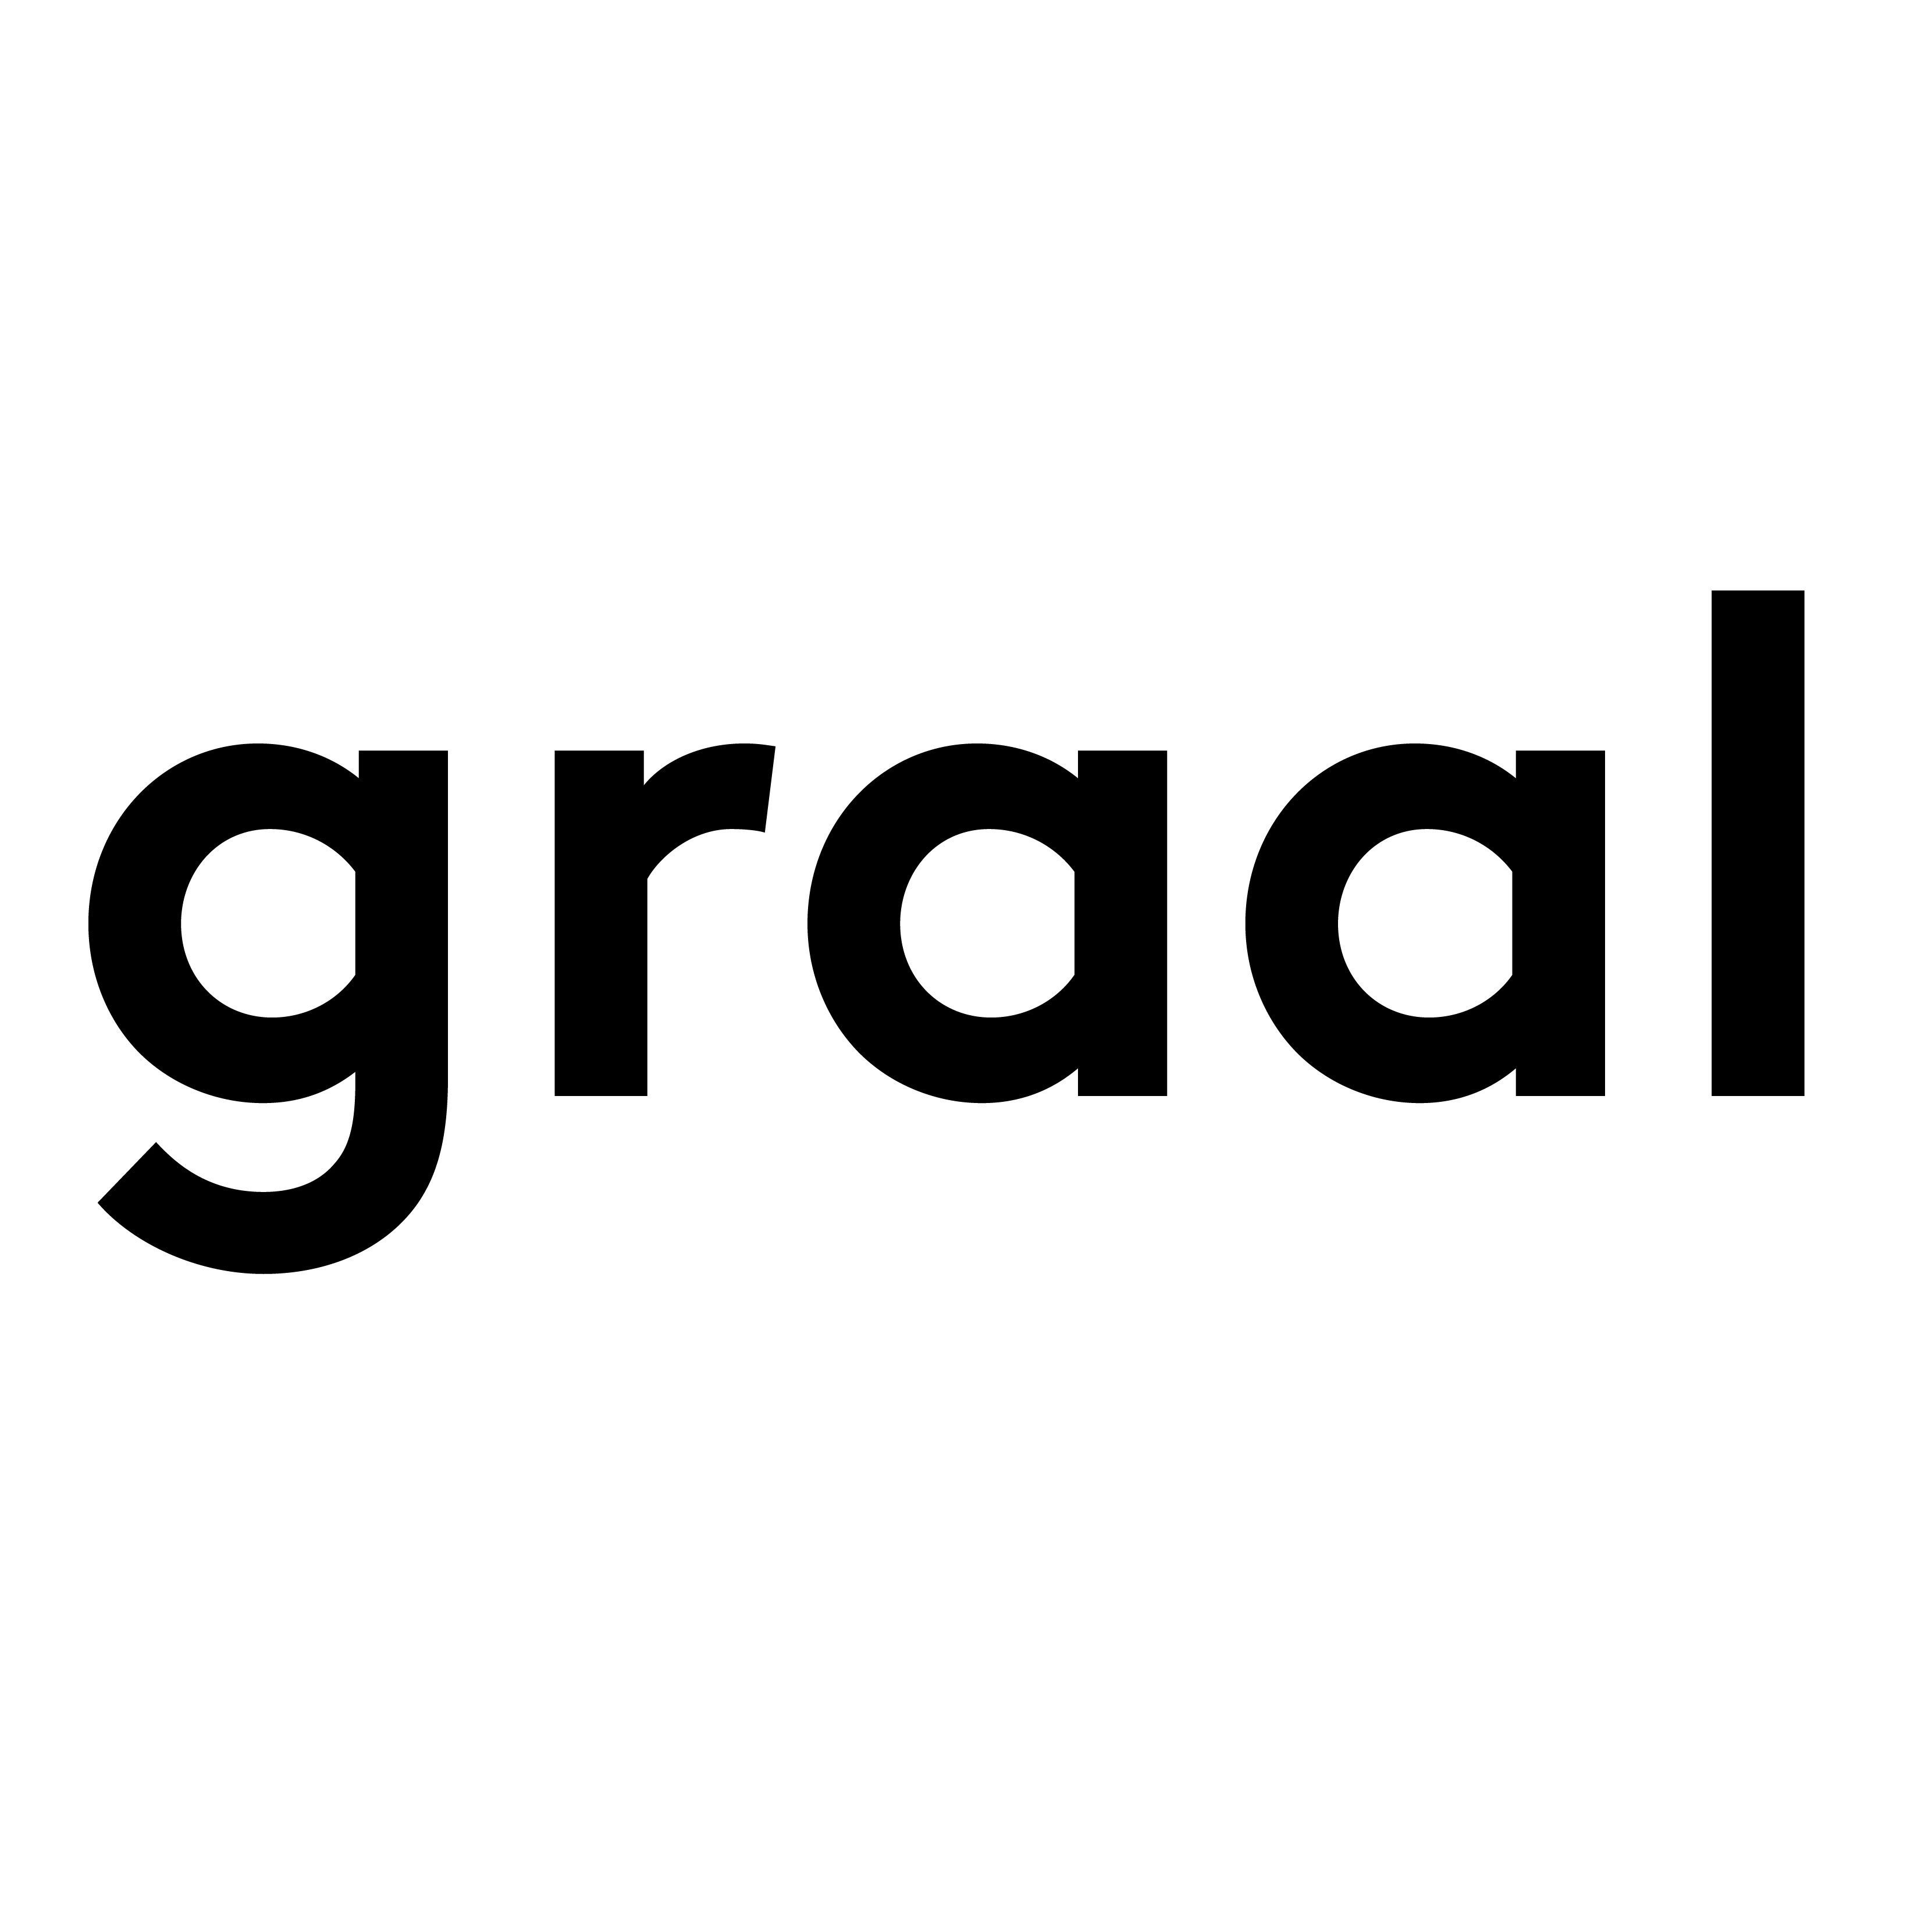 GRAAL Architecture recherche un(e) stagiaire